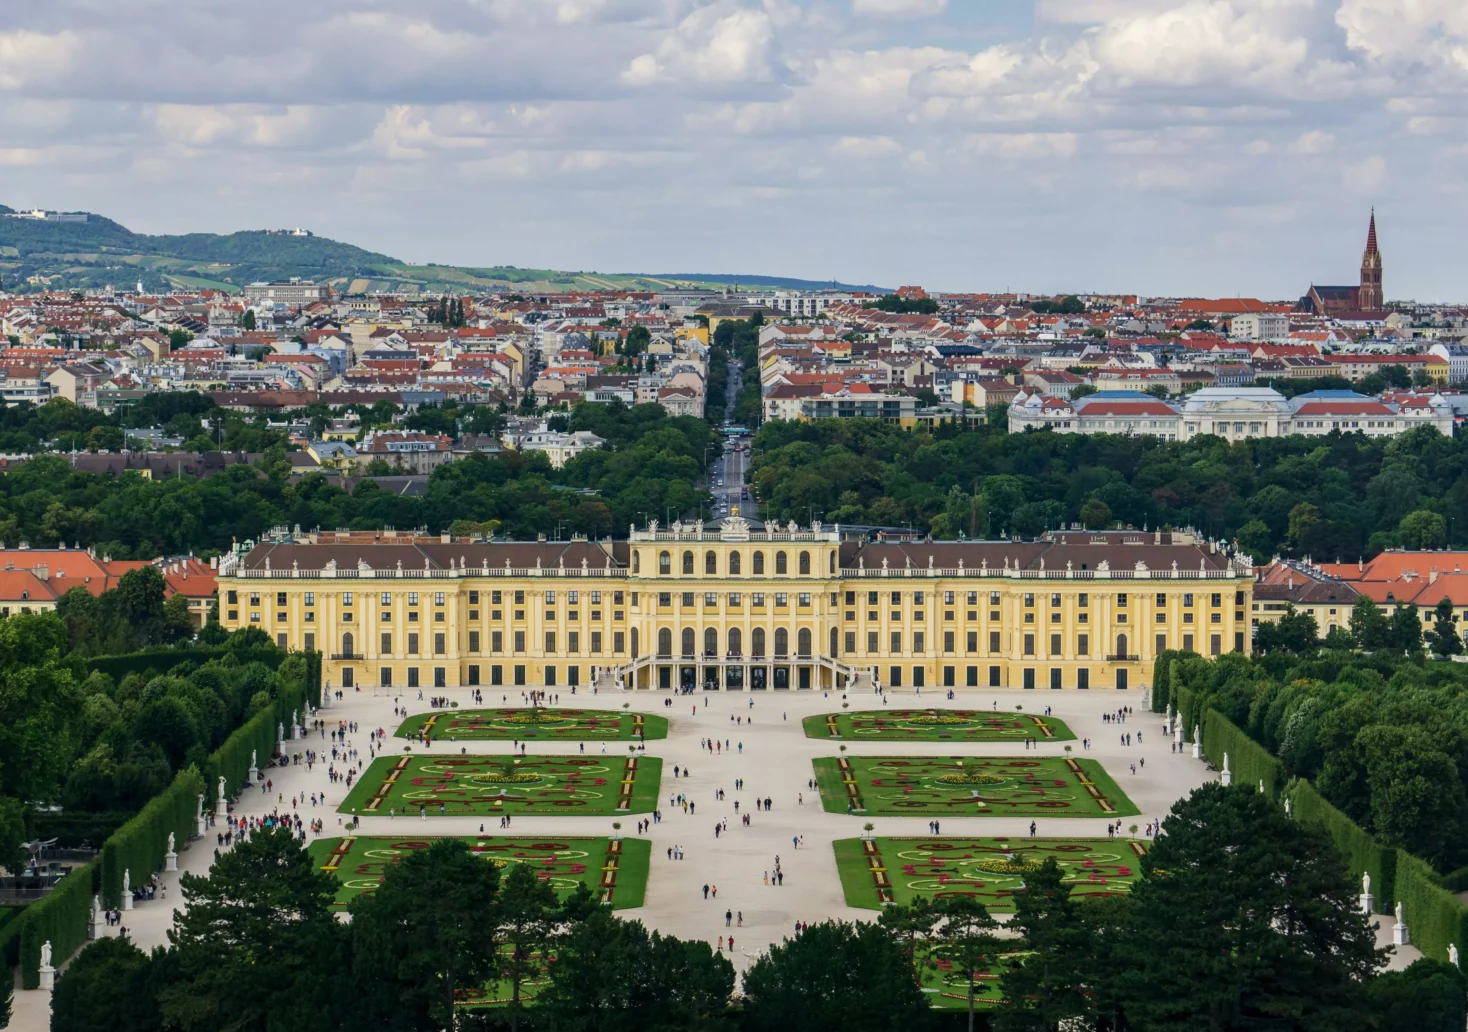 Bild auf 5min.at zeigt das Schloss Schönbrunn.